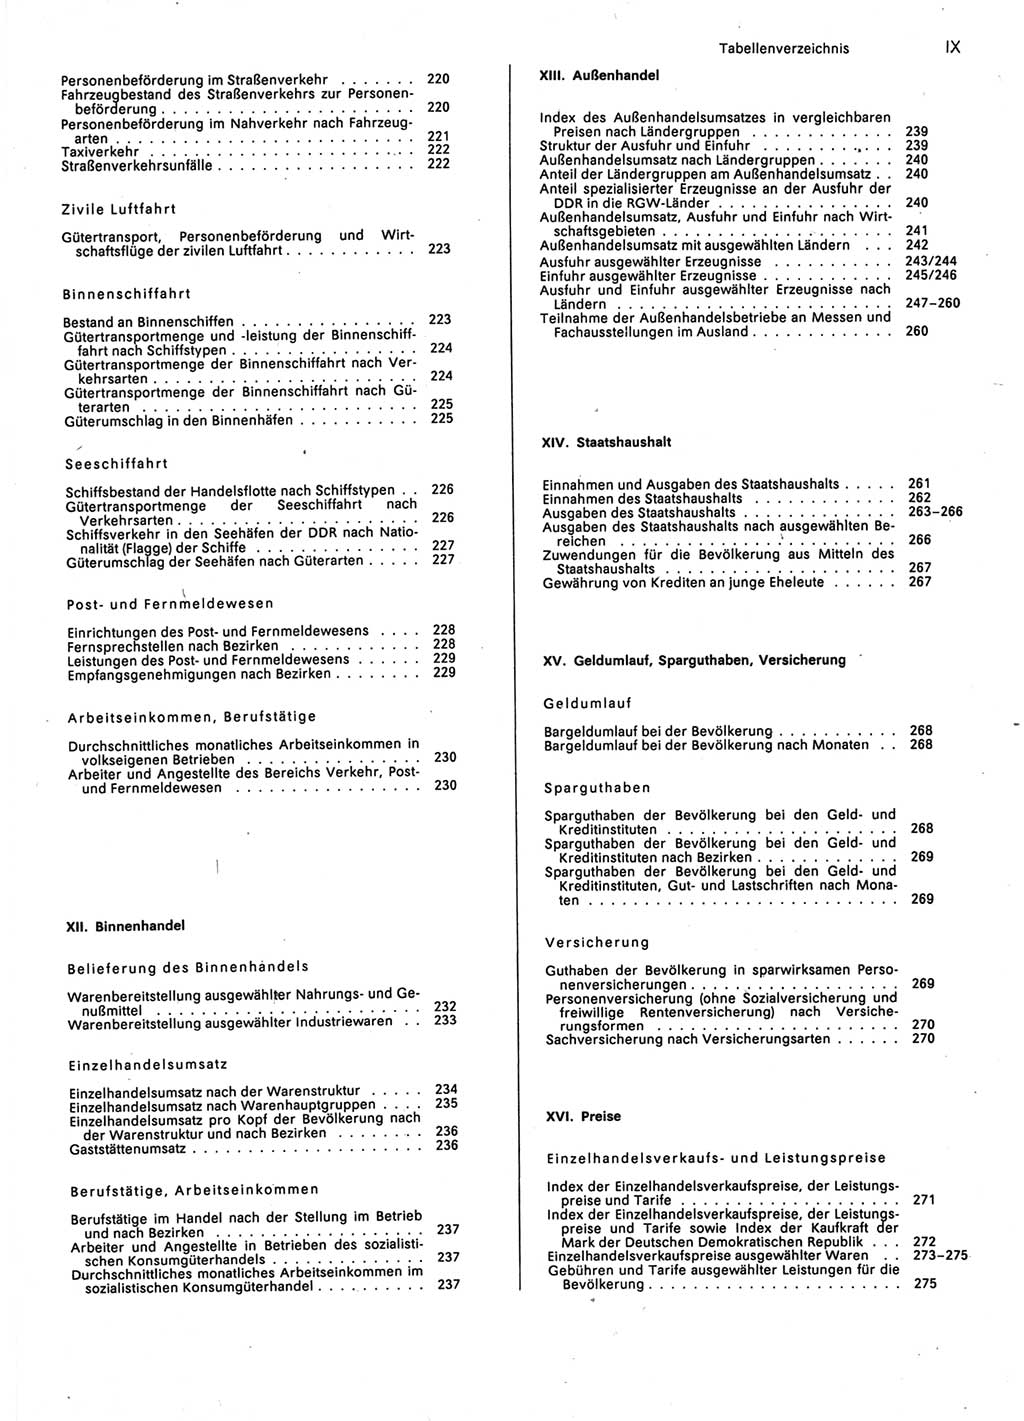 Statistisches Jahrbuch der Deutschen Demokratischen Republik (DDR) 1987, Seite 9 (Stat. Jb. DDR 1987, S. 9)